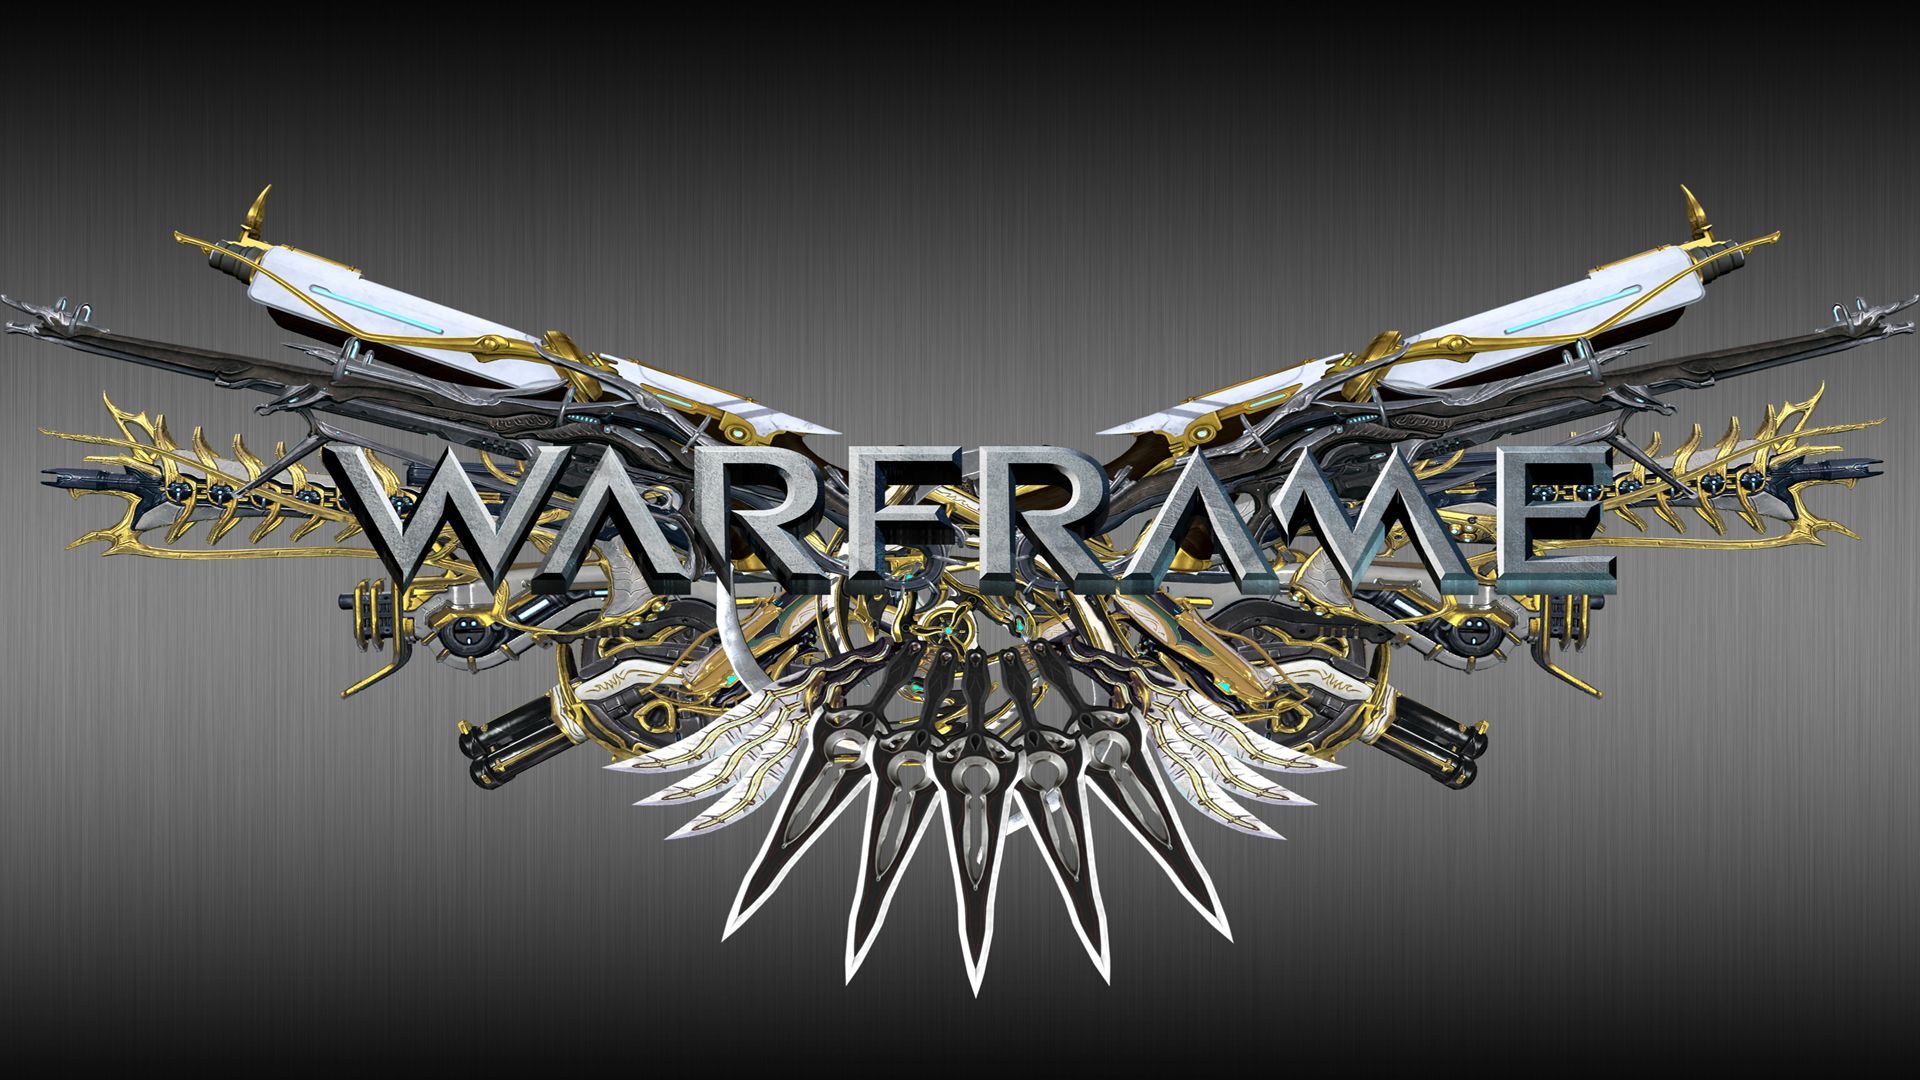 Warframe Wings Of Chaos Wallpaper   Fan Art   Warframe Forums 1920x1080